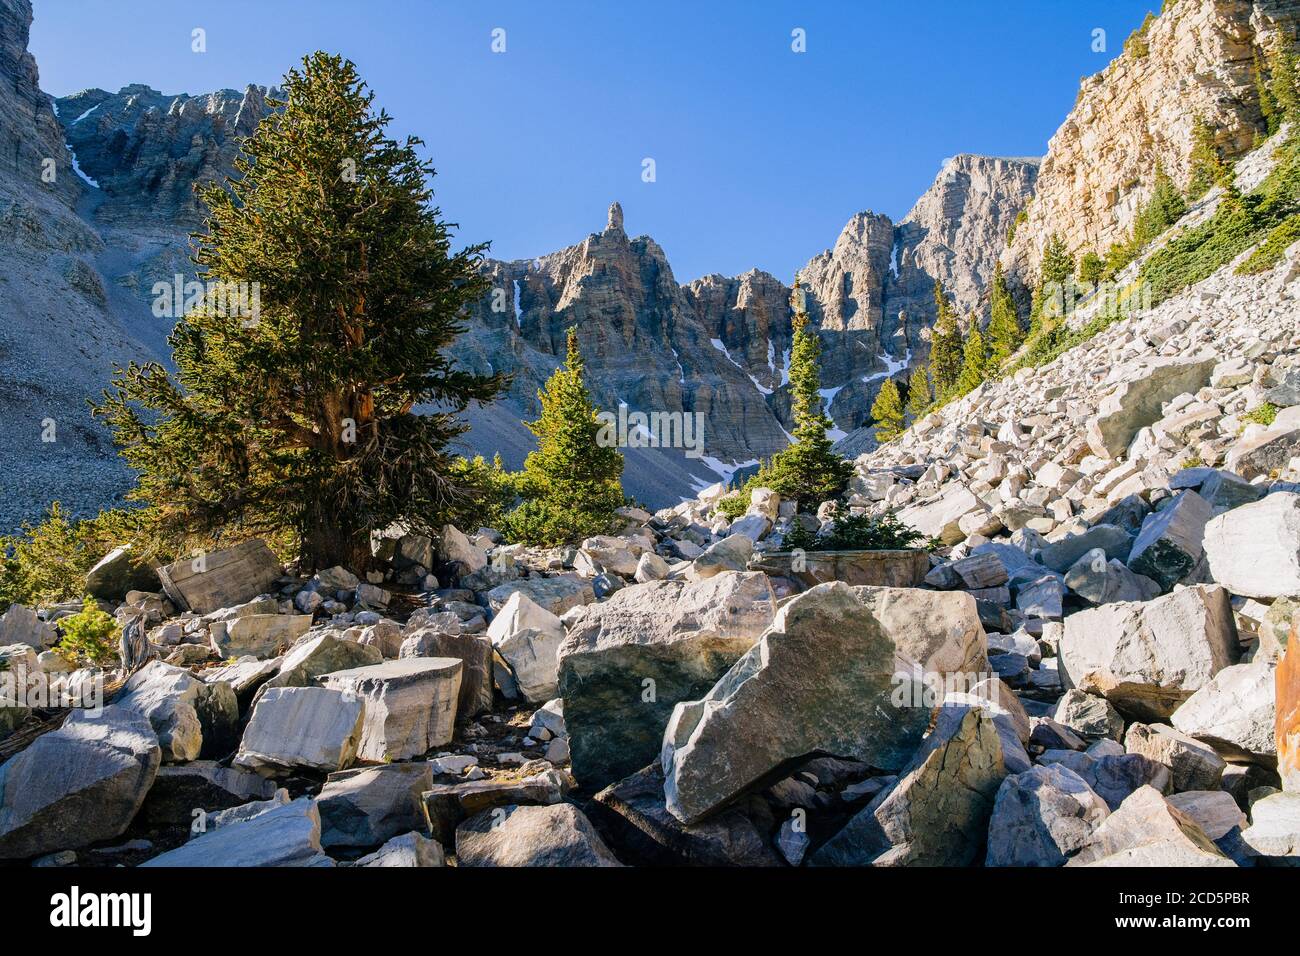 Paysage avec des pins en soiglecone et des débris de roche dans la vallée, parc national de Great Basin, comté de White Pine, Nevada, États-Unis Banque D'Images